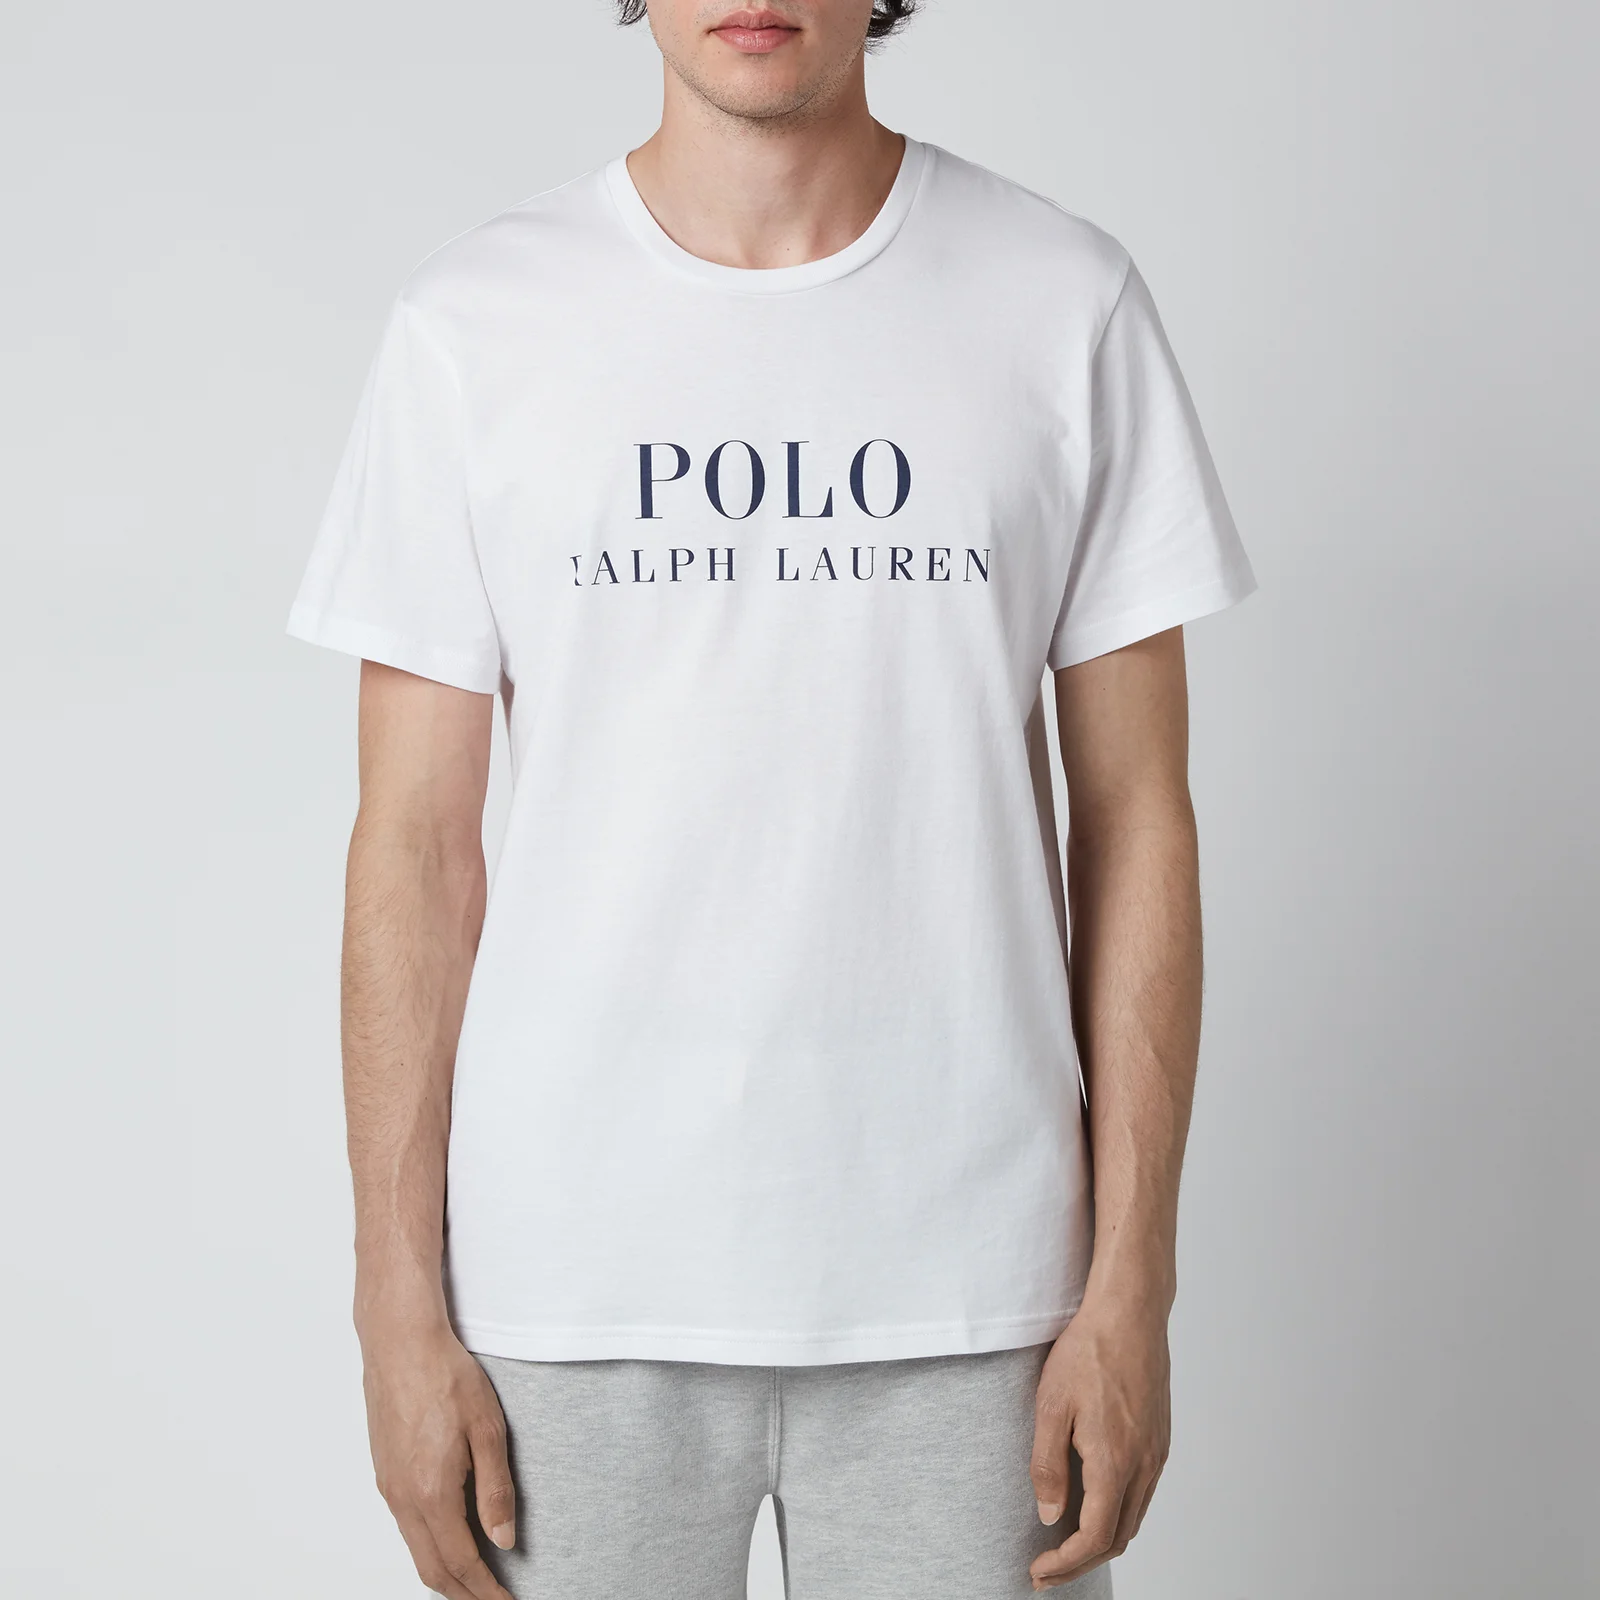 Polo Ralph Lauren Men's Liquid Cotton Crewneck T-Shirt - White Image 1